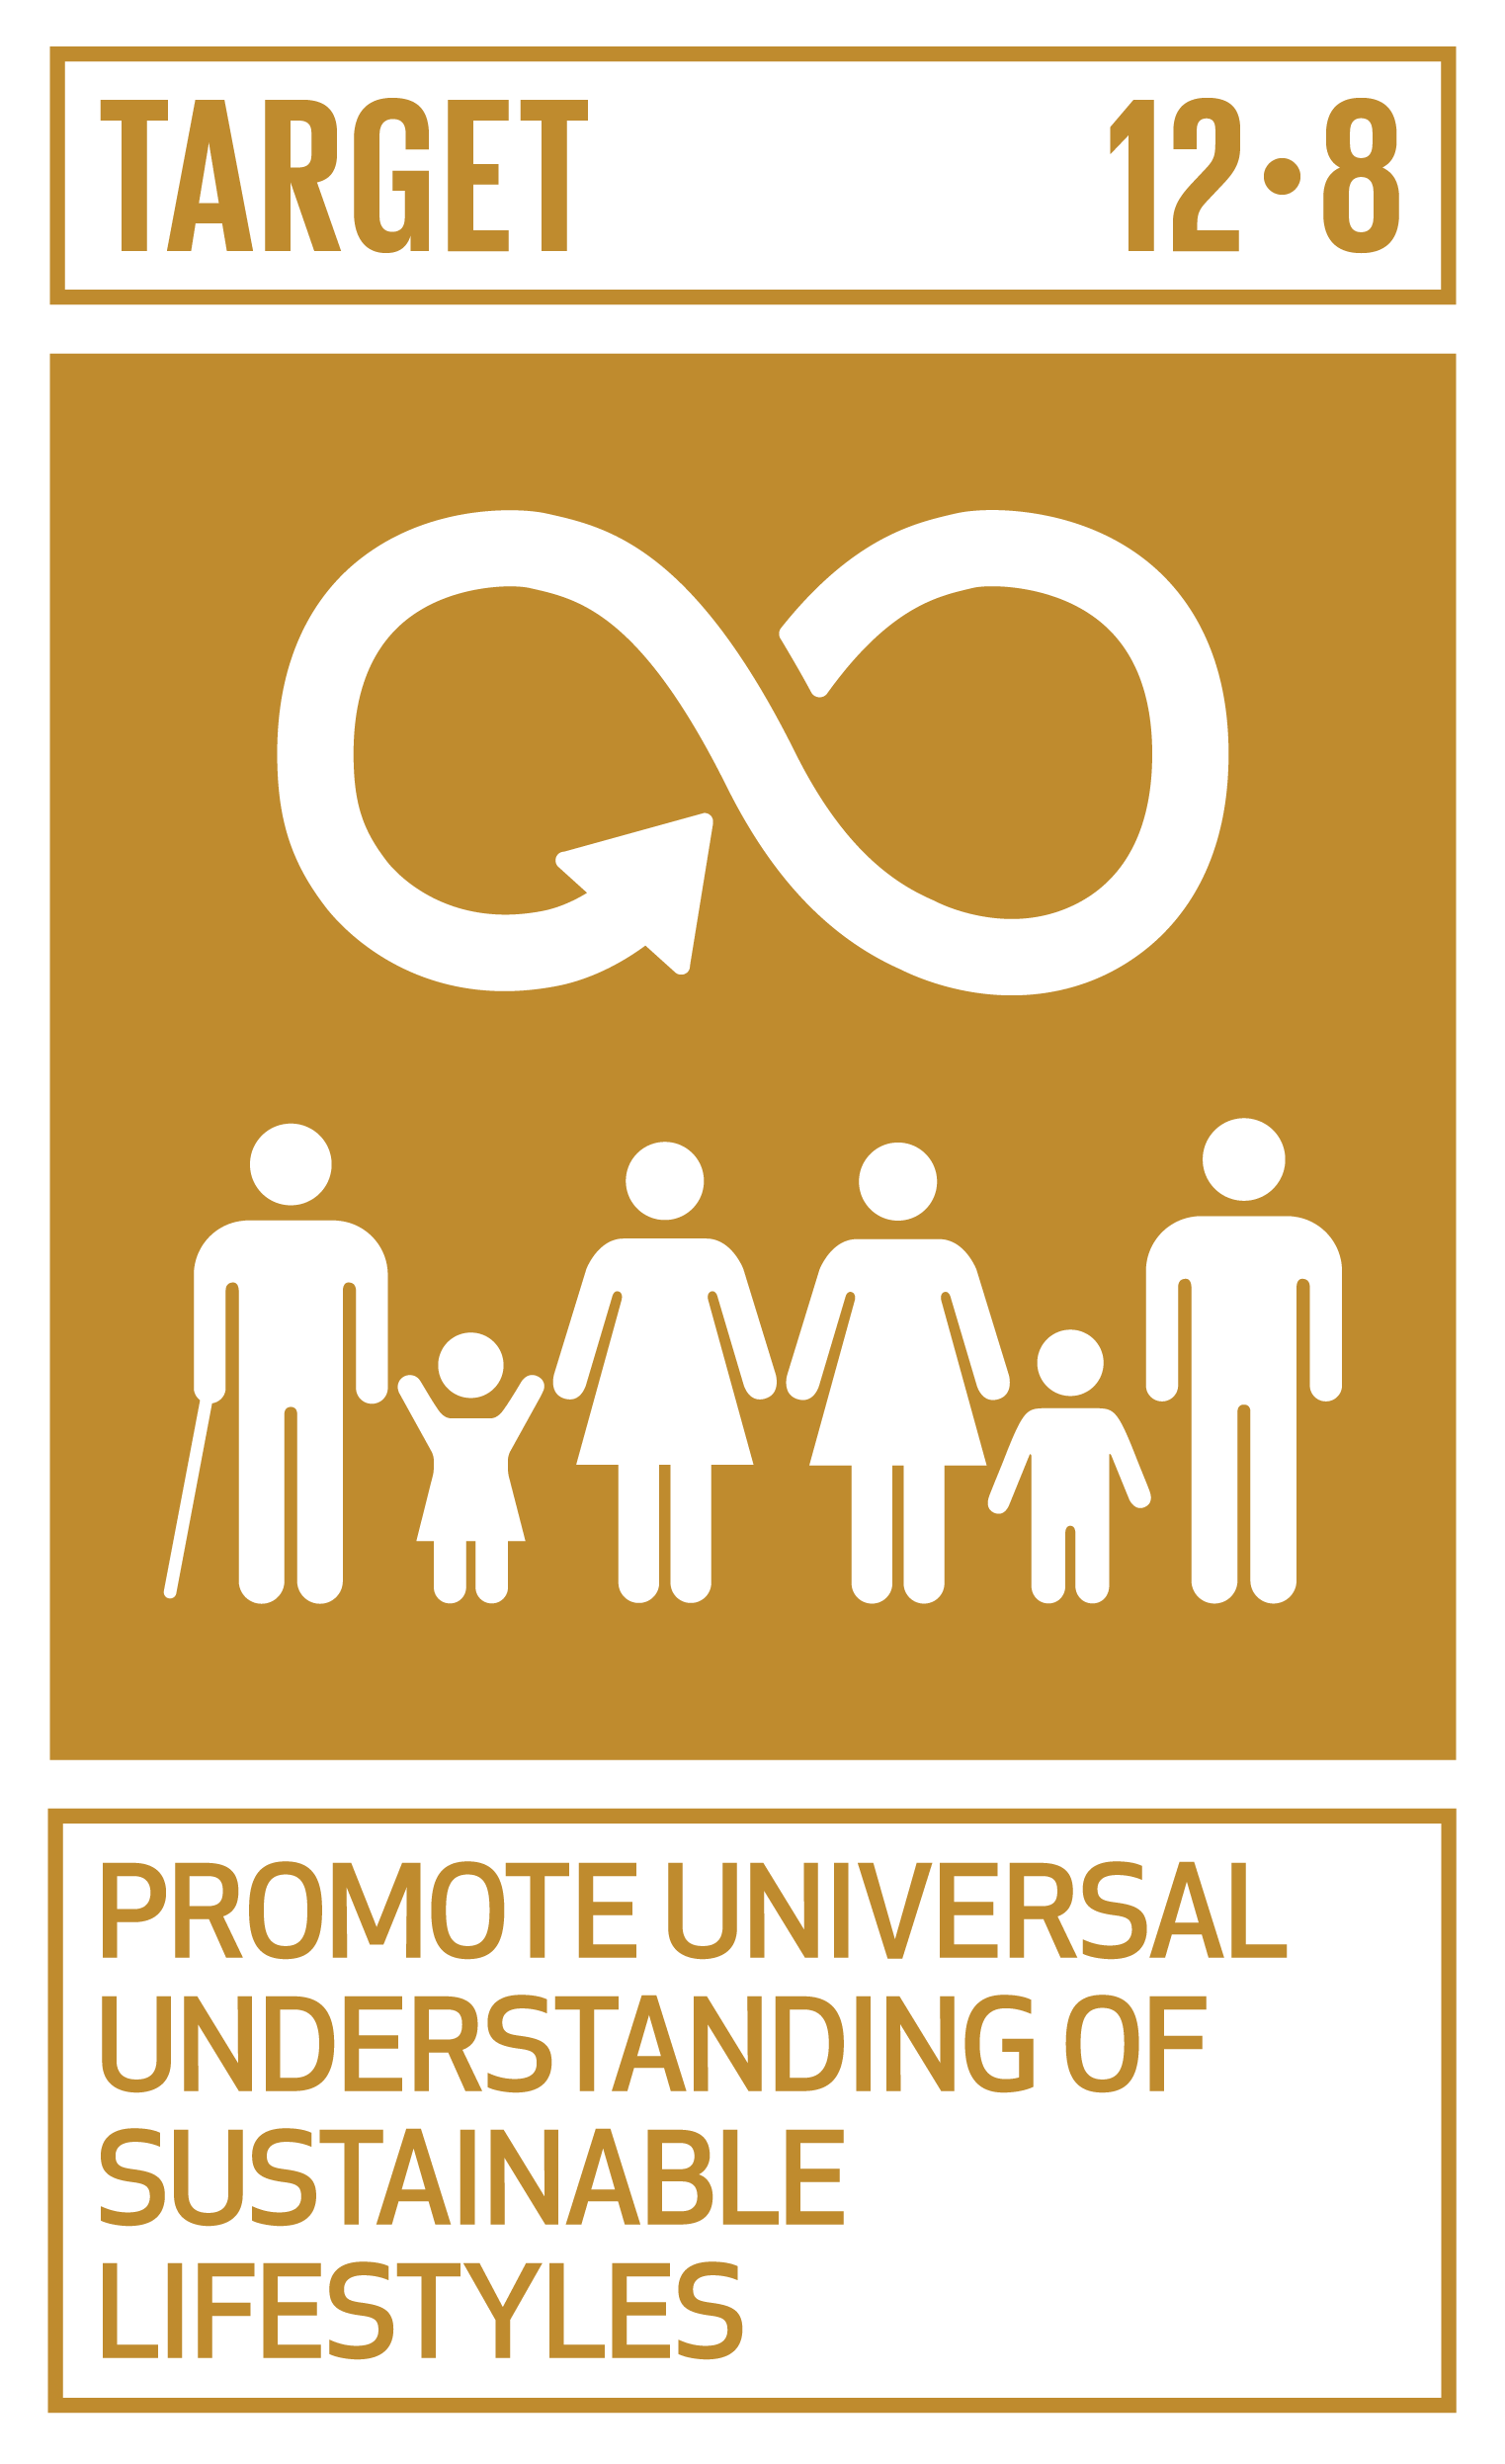 Goal,target,永續發展目標SDGs12, 目標12.8促進對永續生活方式的普遍理解